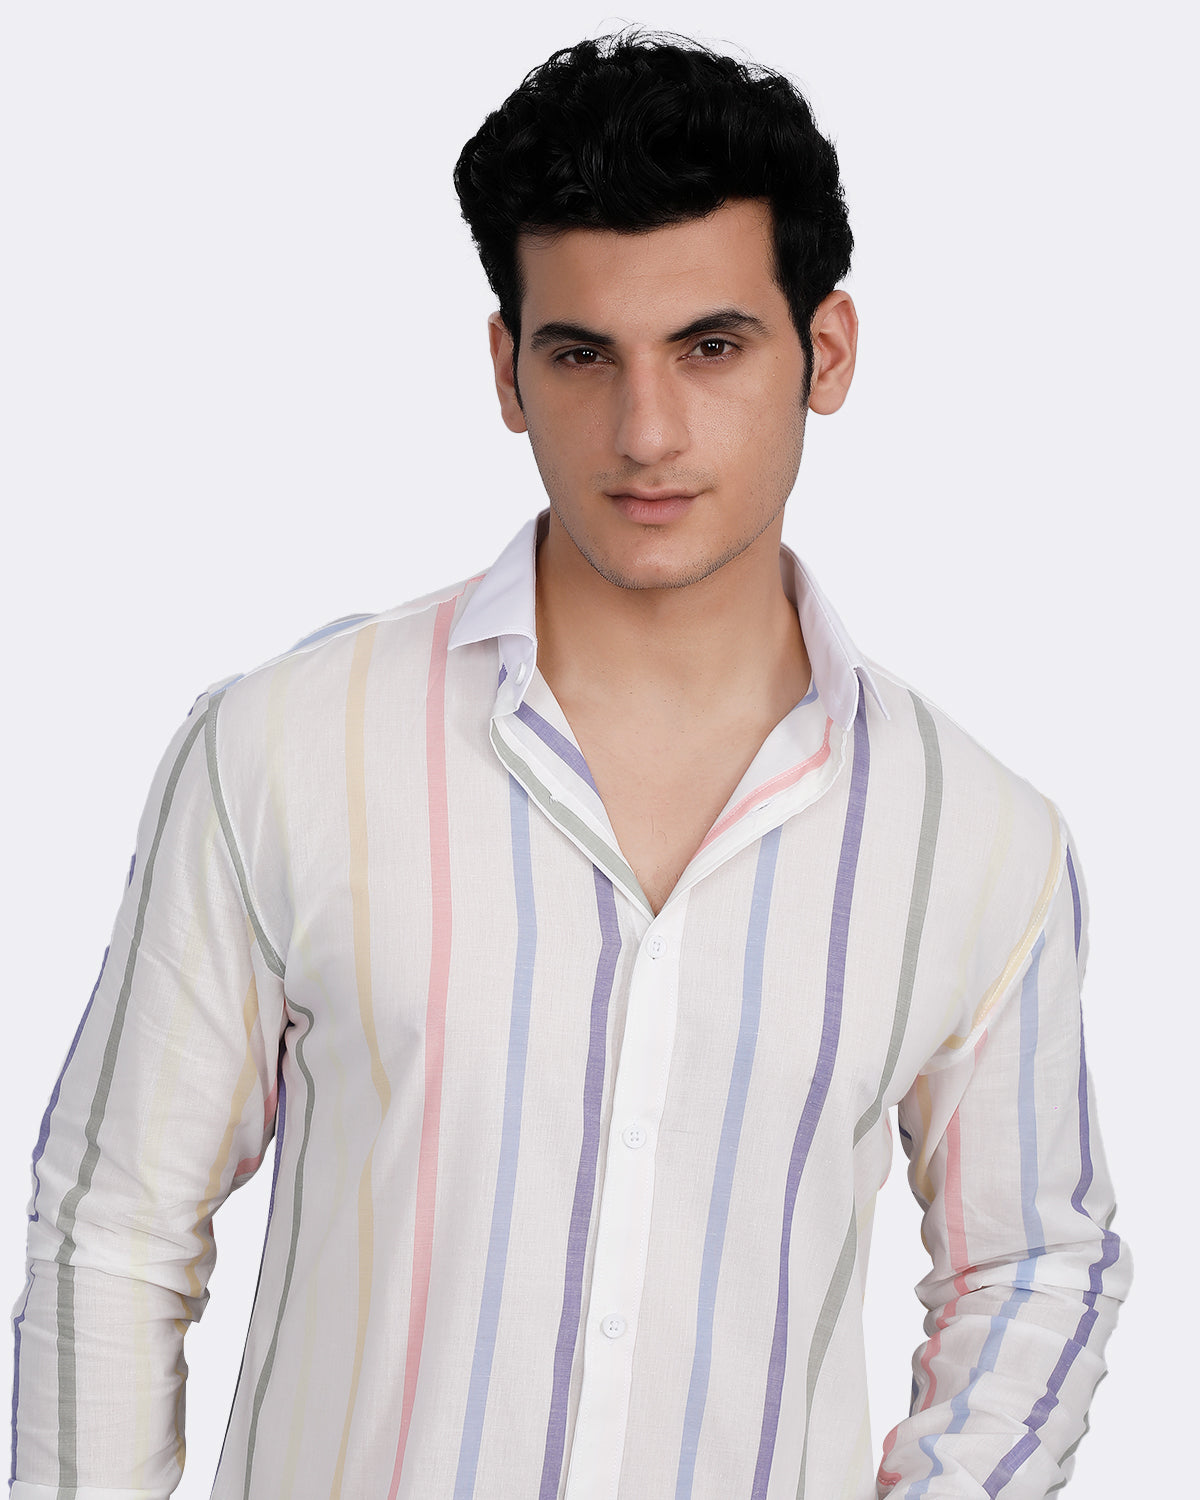 Bright White Multicolor Striped Premium Shirts